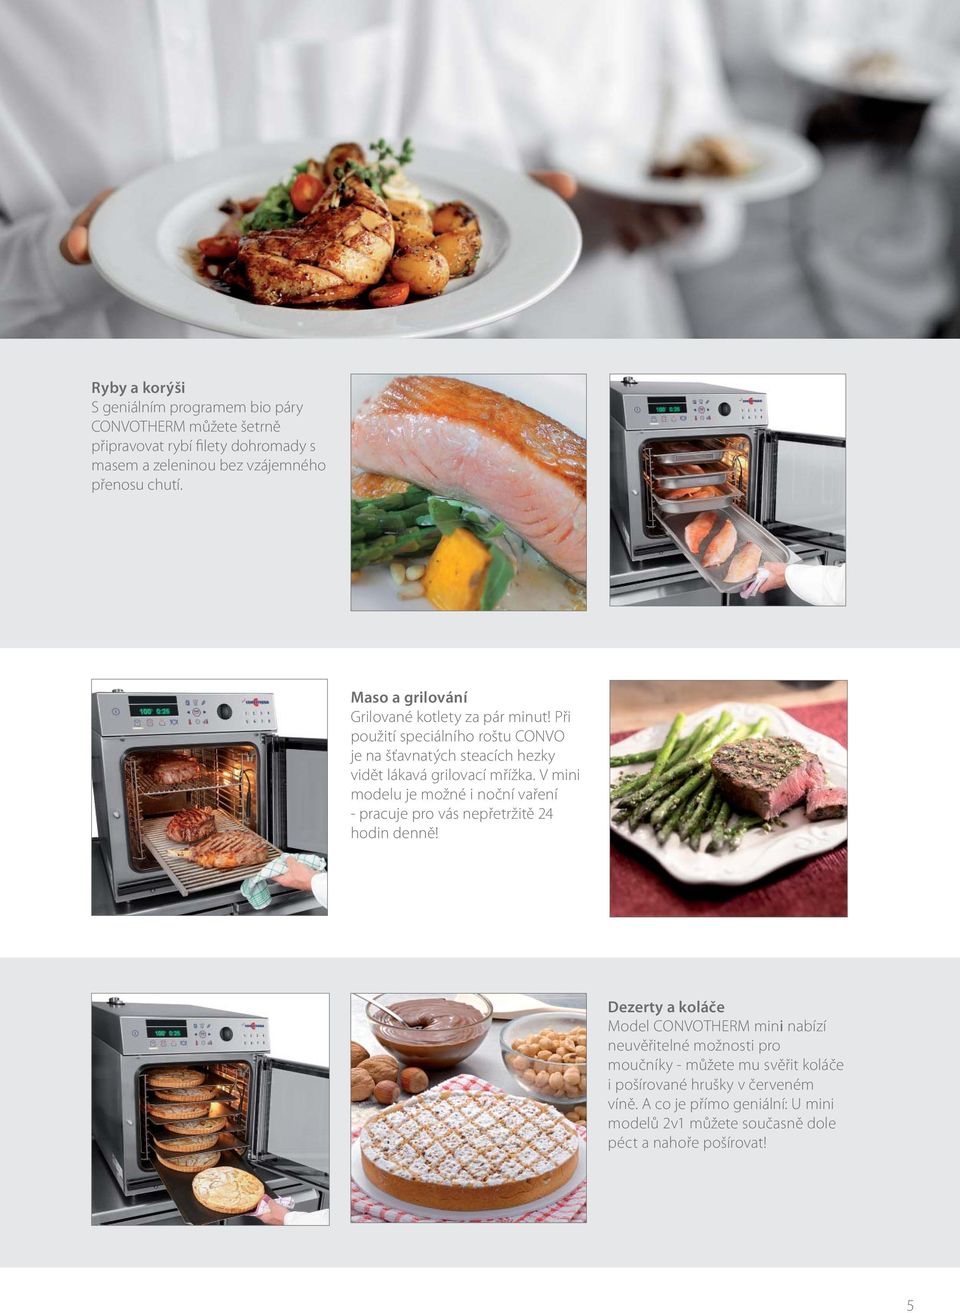 V mini modelu je možné i noční vaření - pracuje pro vás nepřetržitě 24 hodin denně!